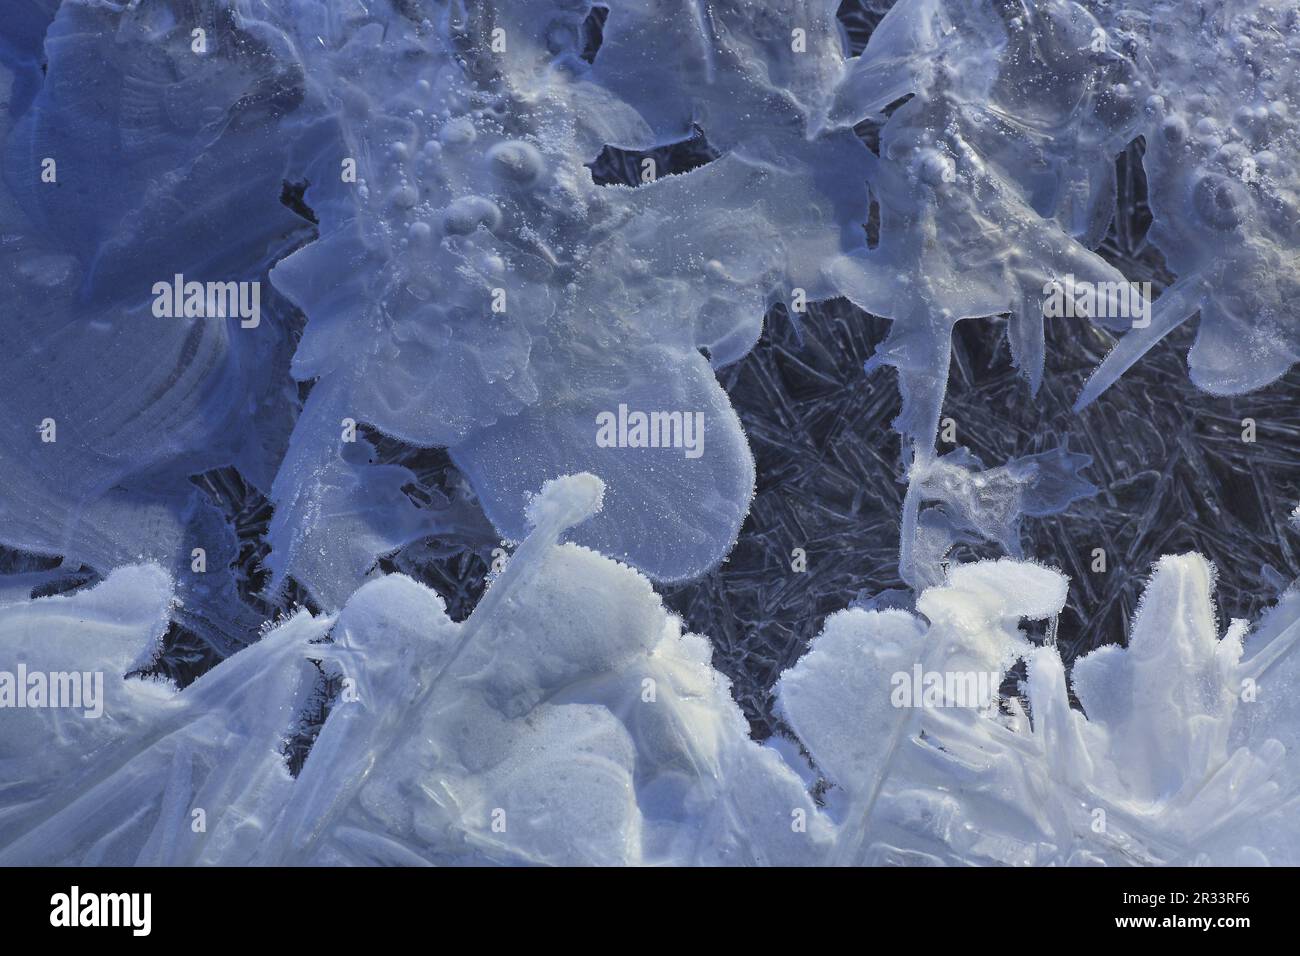 Forme di ghiaccio immagini e fotografie stock ad alta risoluzione - Alamy